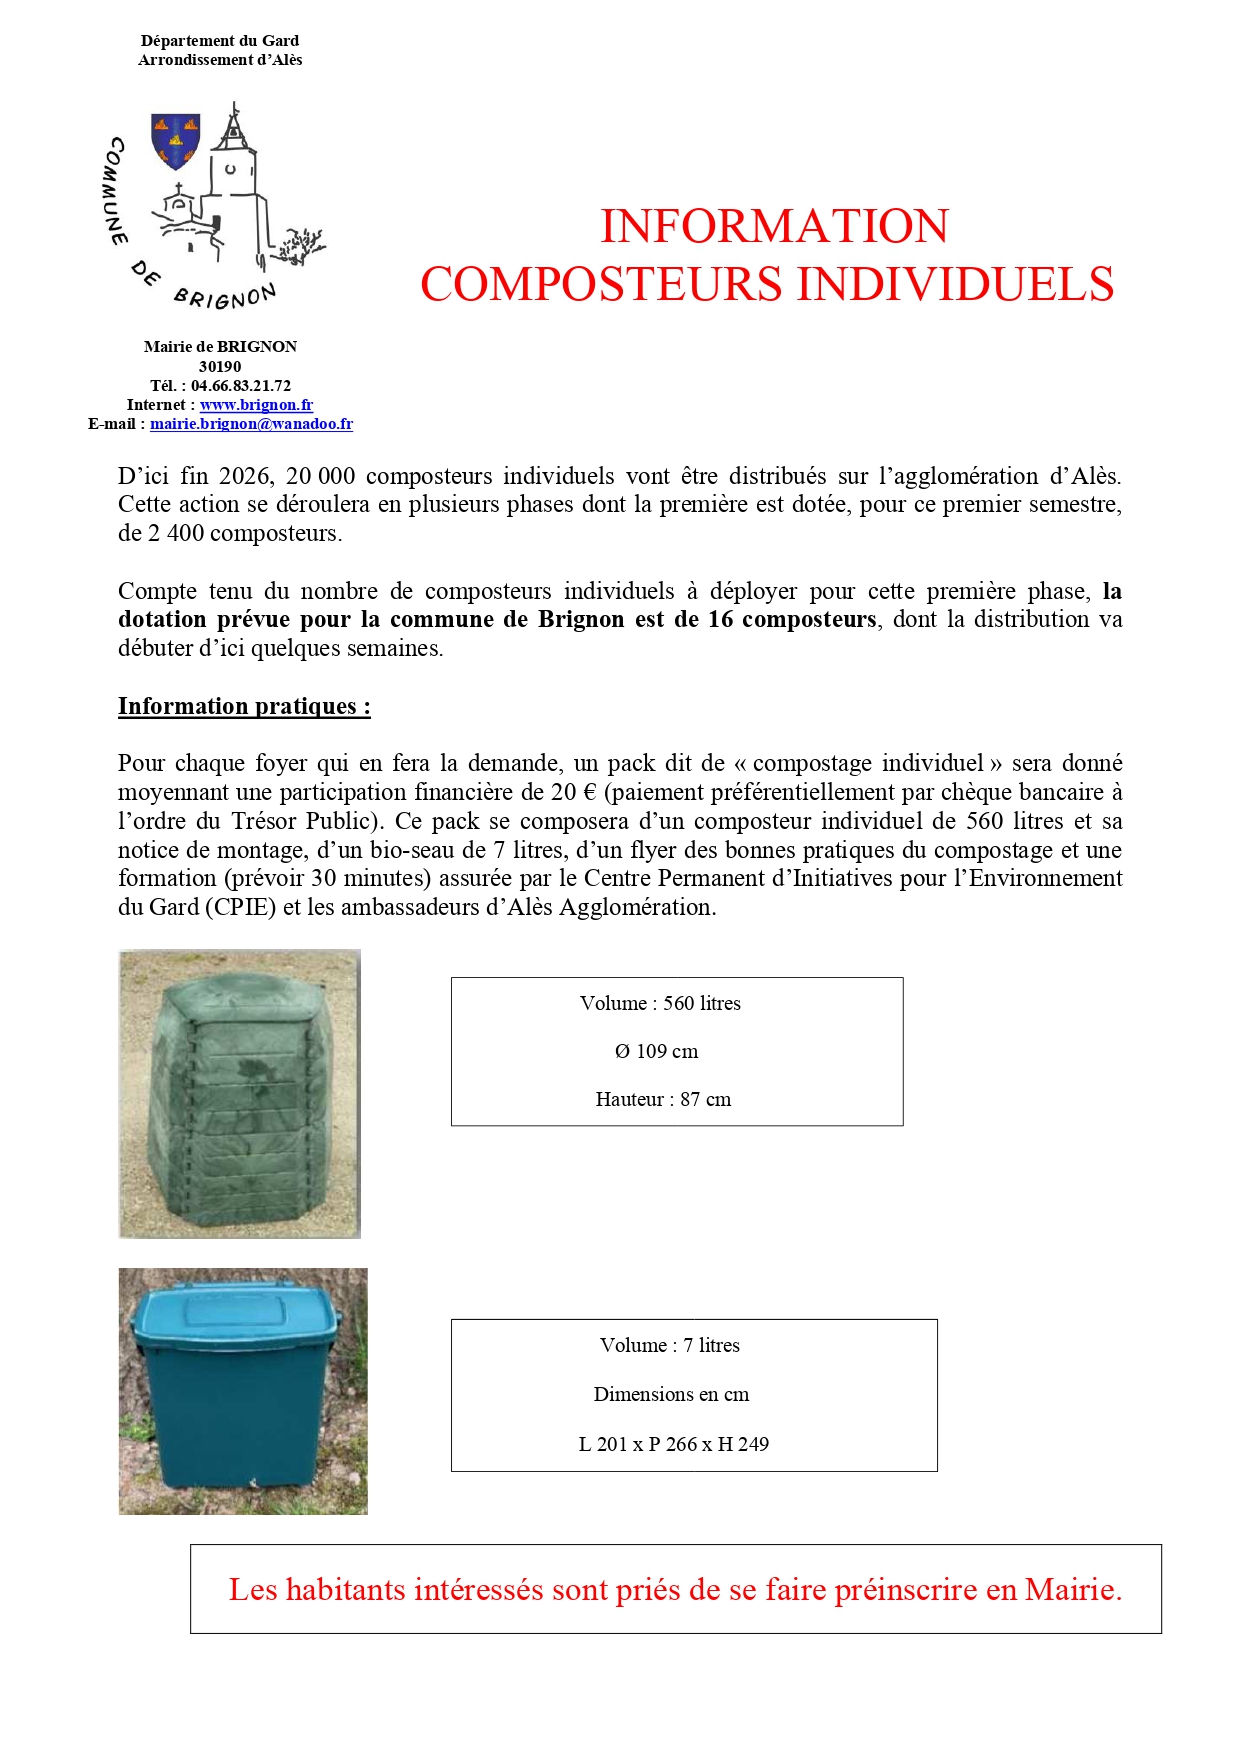 Petit composteur - Le site officiel de l'Agglomération du Gard